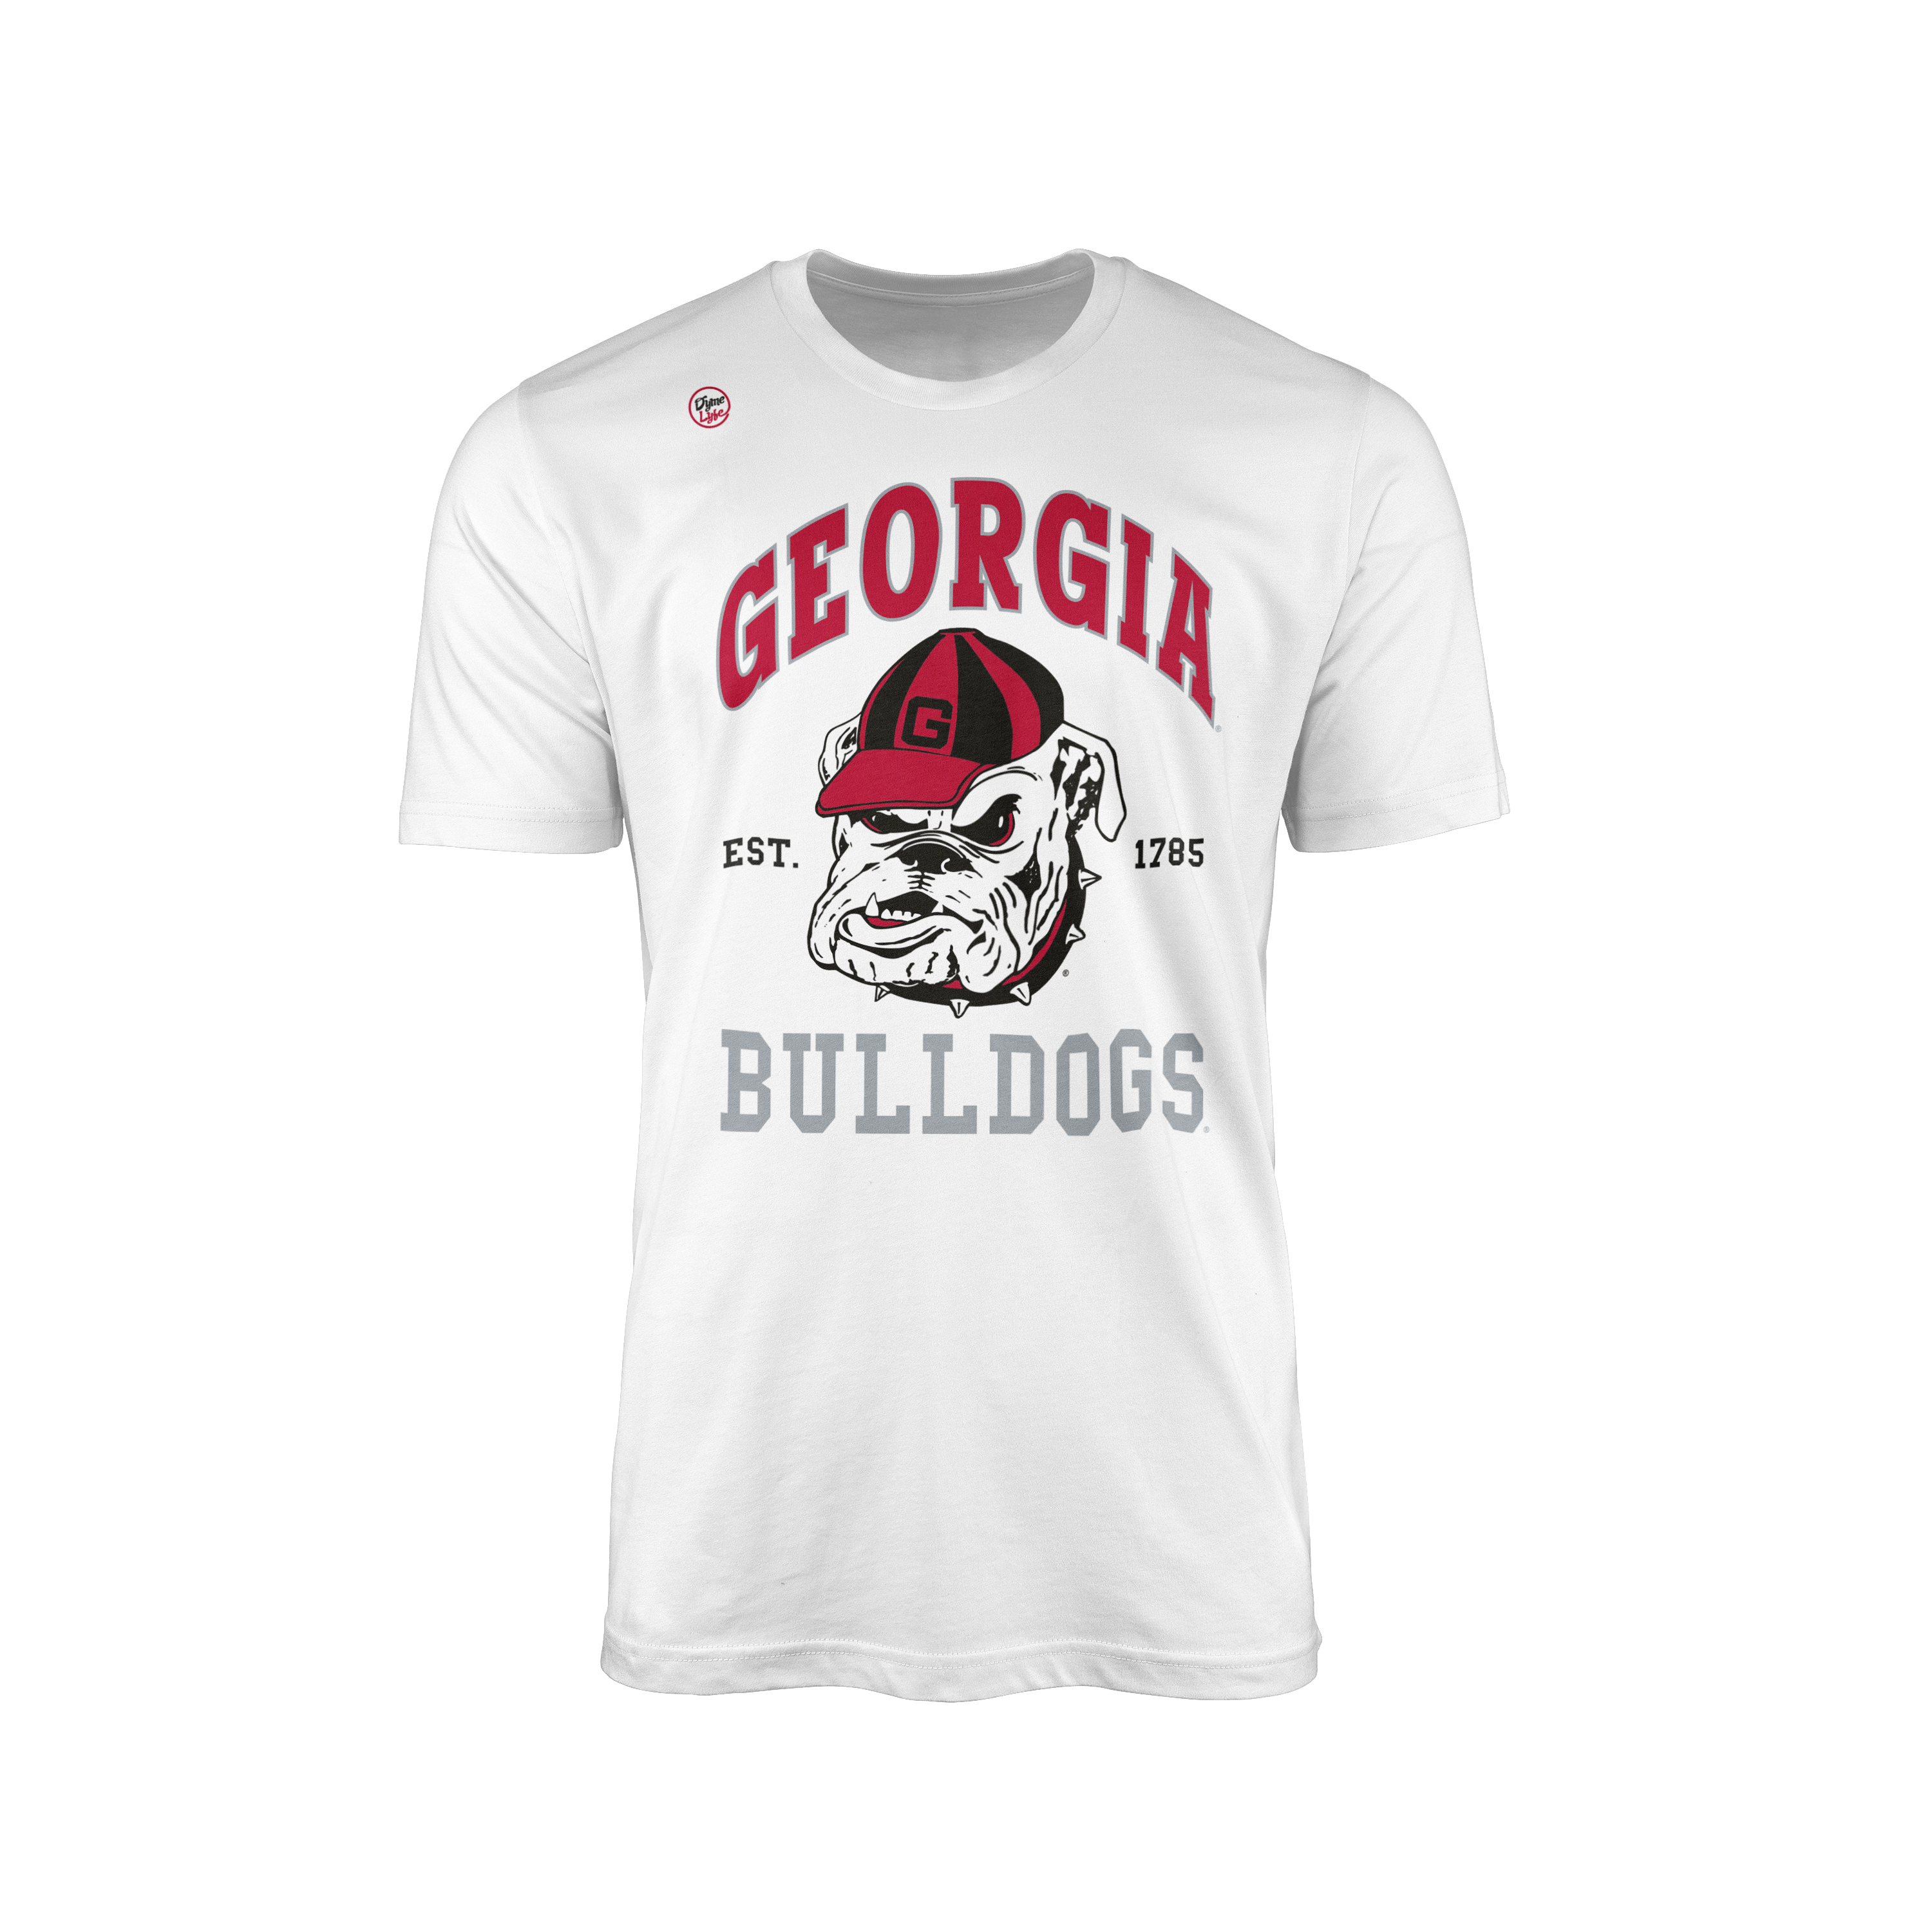 Georgia Bulldogs Men’s Est. Tee